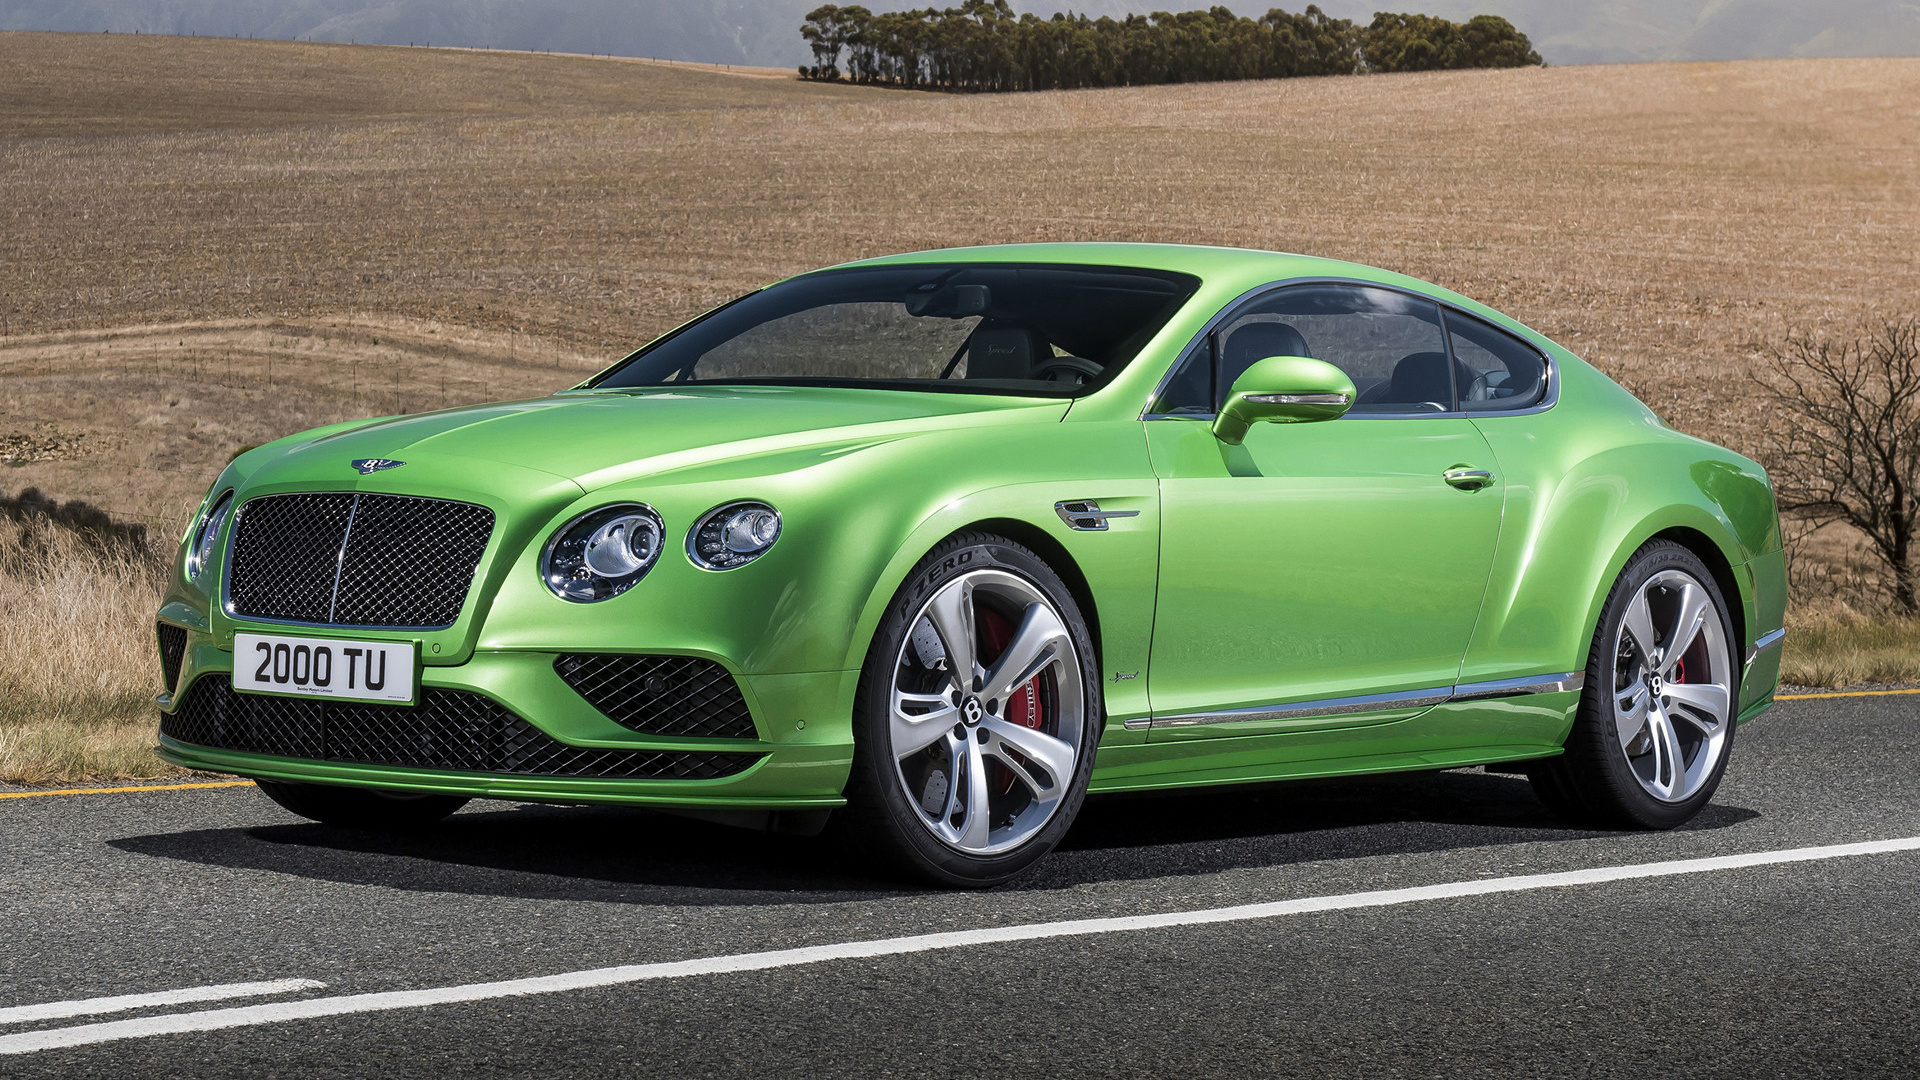 Descarga gratuita de fondo de pantalla para móvil de Bentley, Coche, Gran Turismo, Vehículos, Retroceso Rápido, Coche Verde, Coupé, Bentley Continental Gt Velocidad.